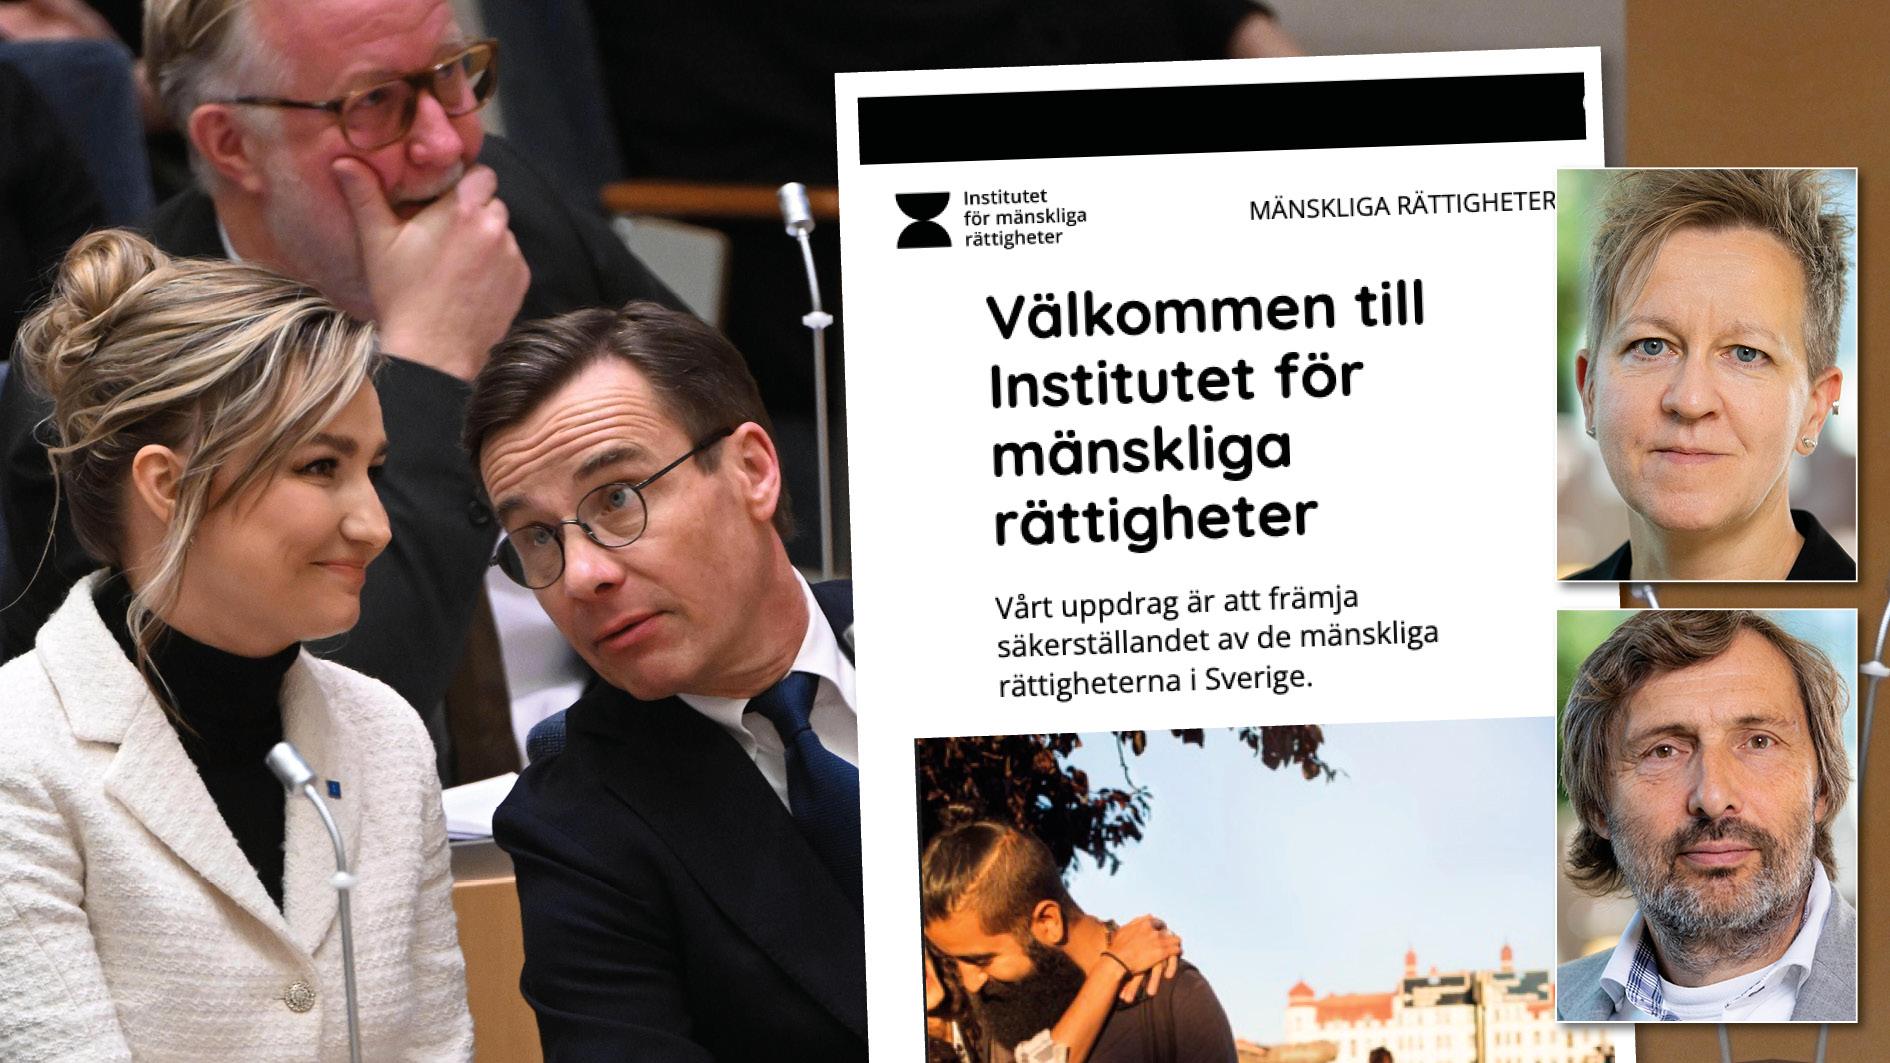 SD vill lägga ner Institutet för mänskliga rättigheter. Det är ytterst allvarligt att regeringen möter dessa absurda krav med en total tystnad, skriver Ulrika Westerlund och Jan Riise, Miljöpartiet.